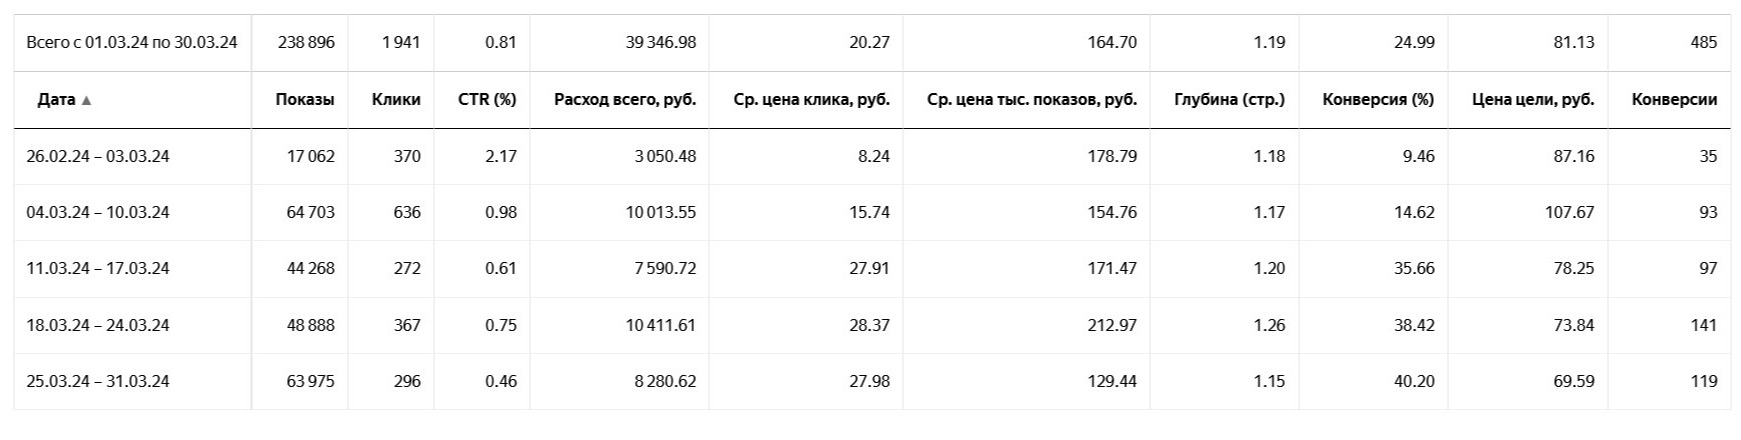 Остекление балконов. 485 заявок по 81 рублю за месяц.